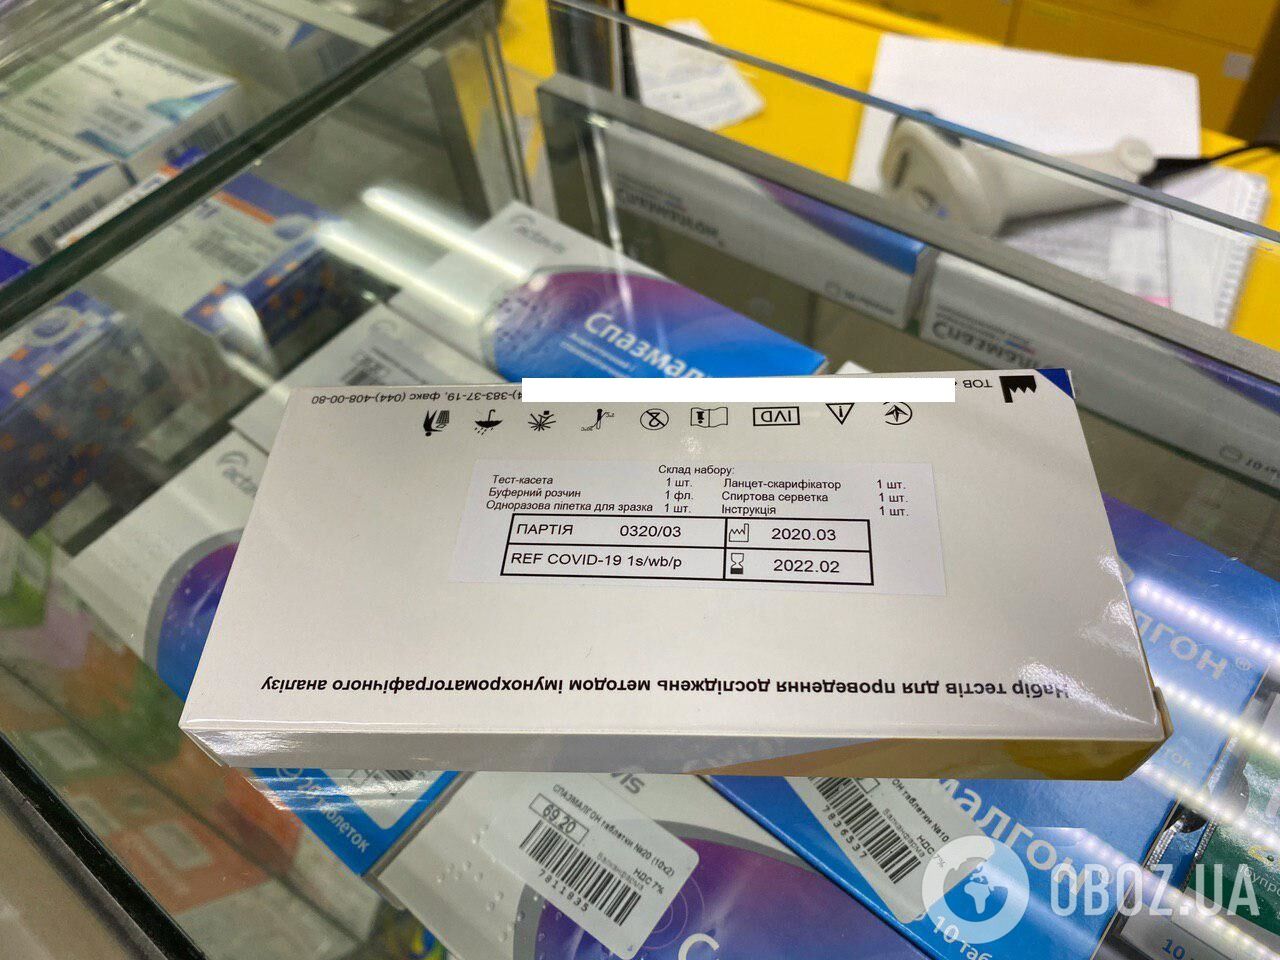 Купить экспресс-тест на коронавирус в украинских аптеках можно всего за 500-600 грн